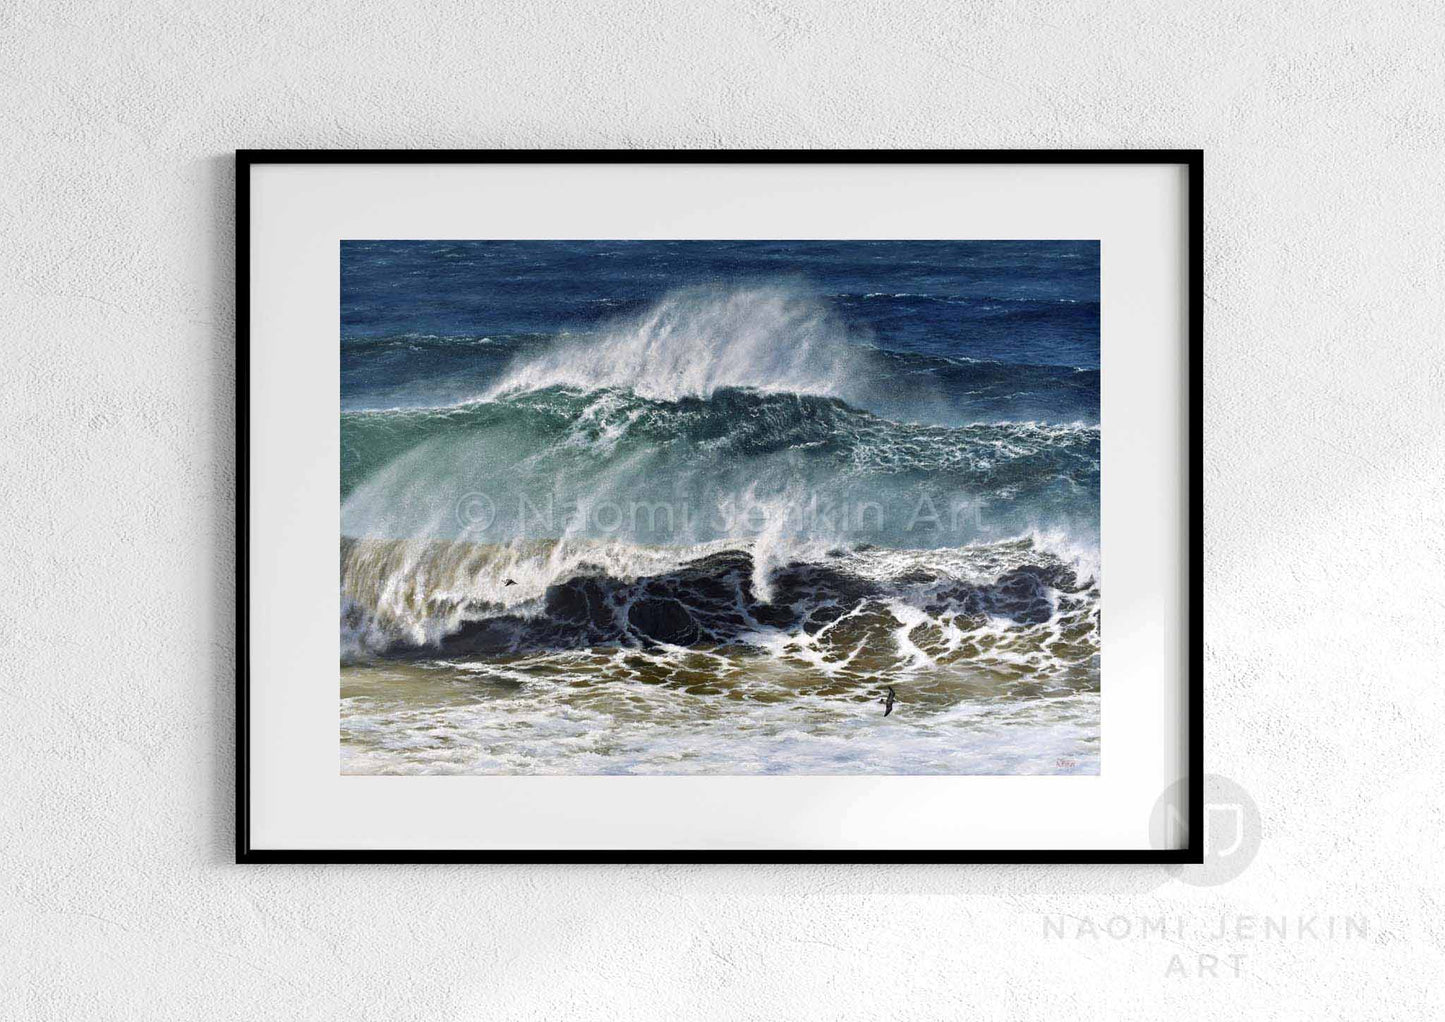 'Raging Seas' seascape print by artist Naomi Jenkin